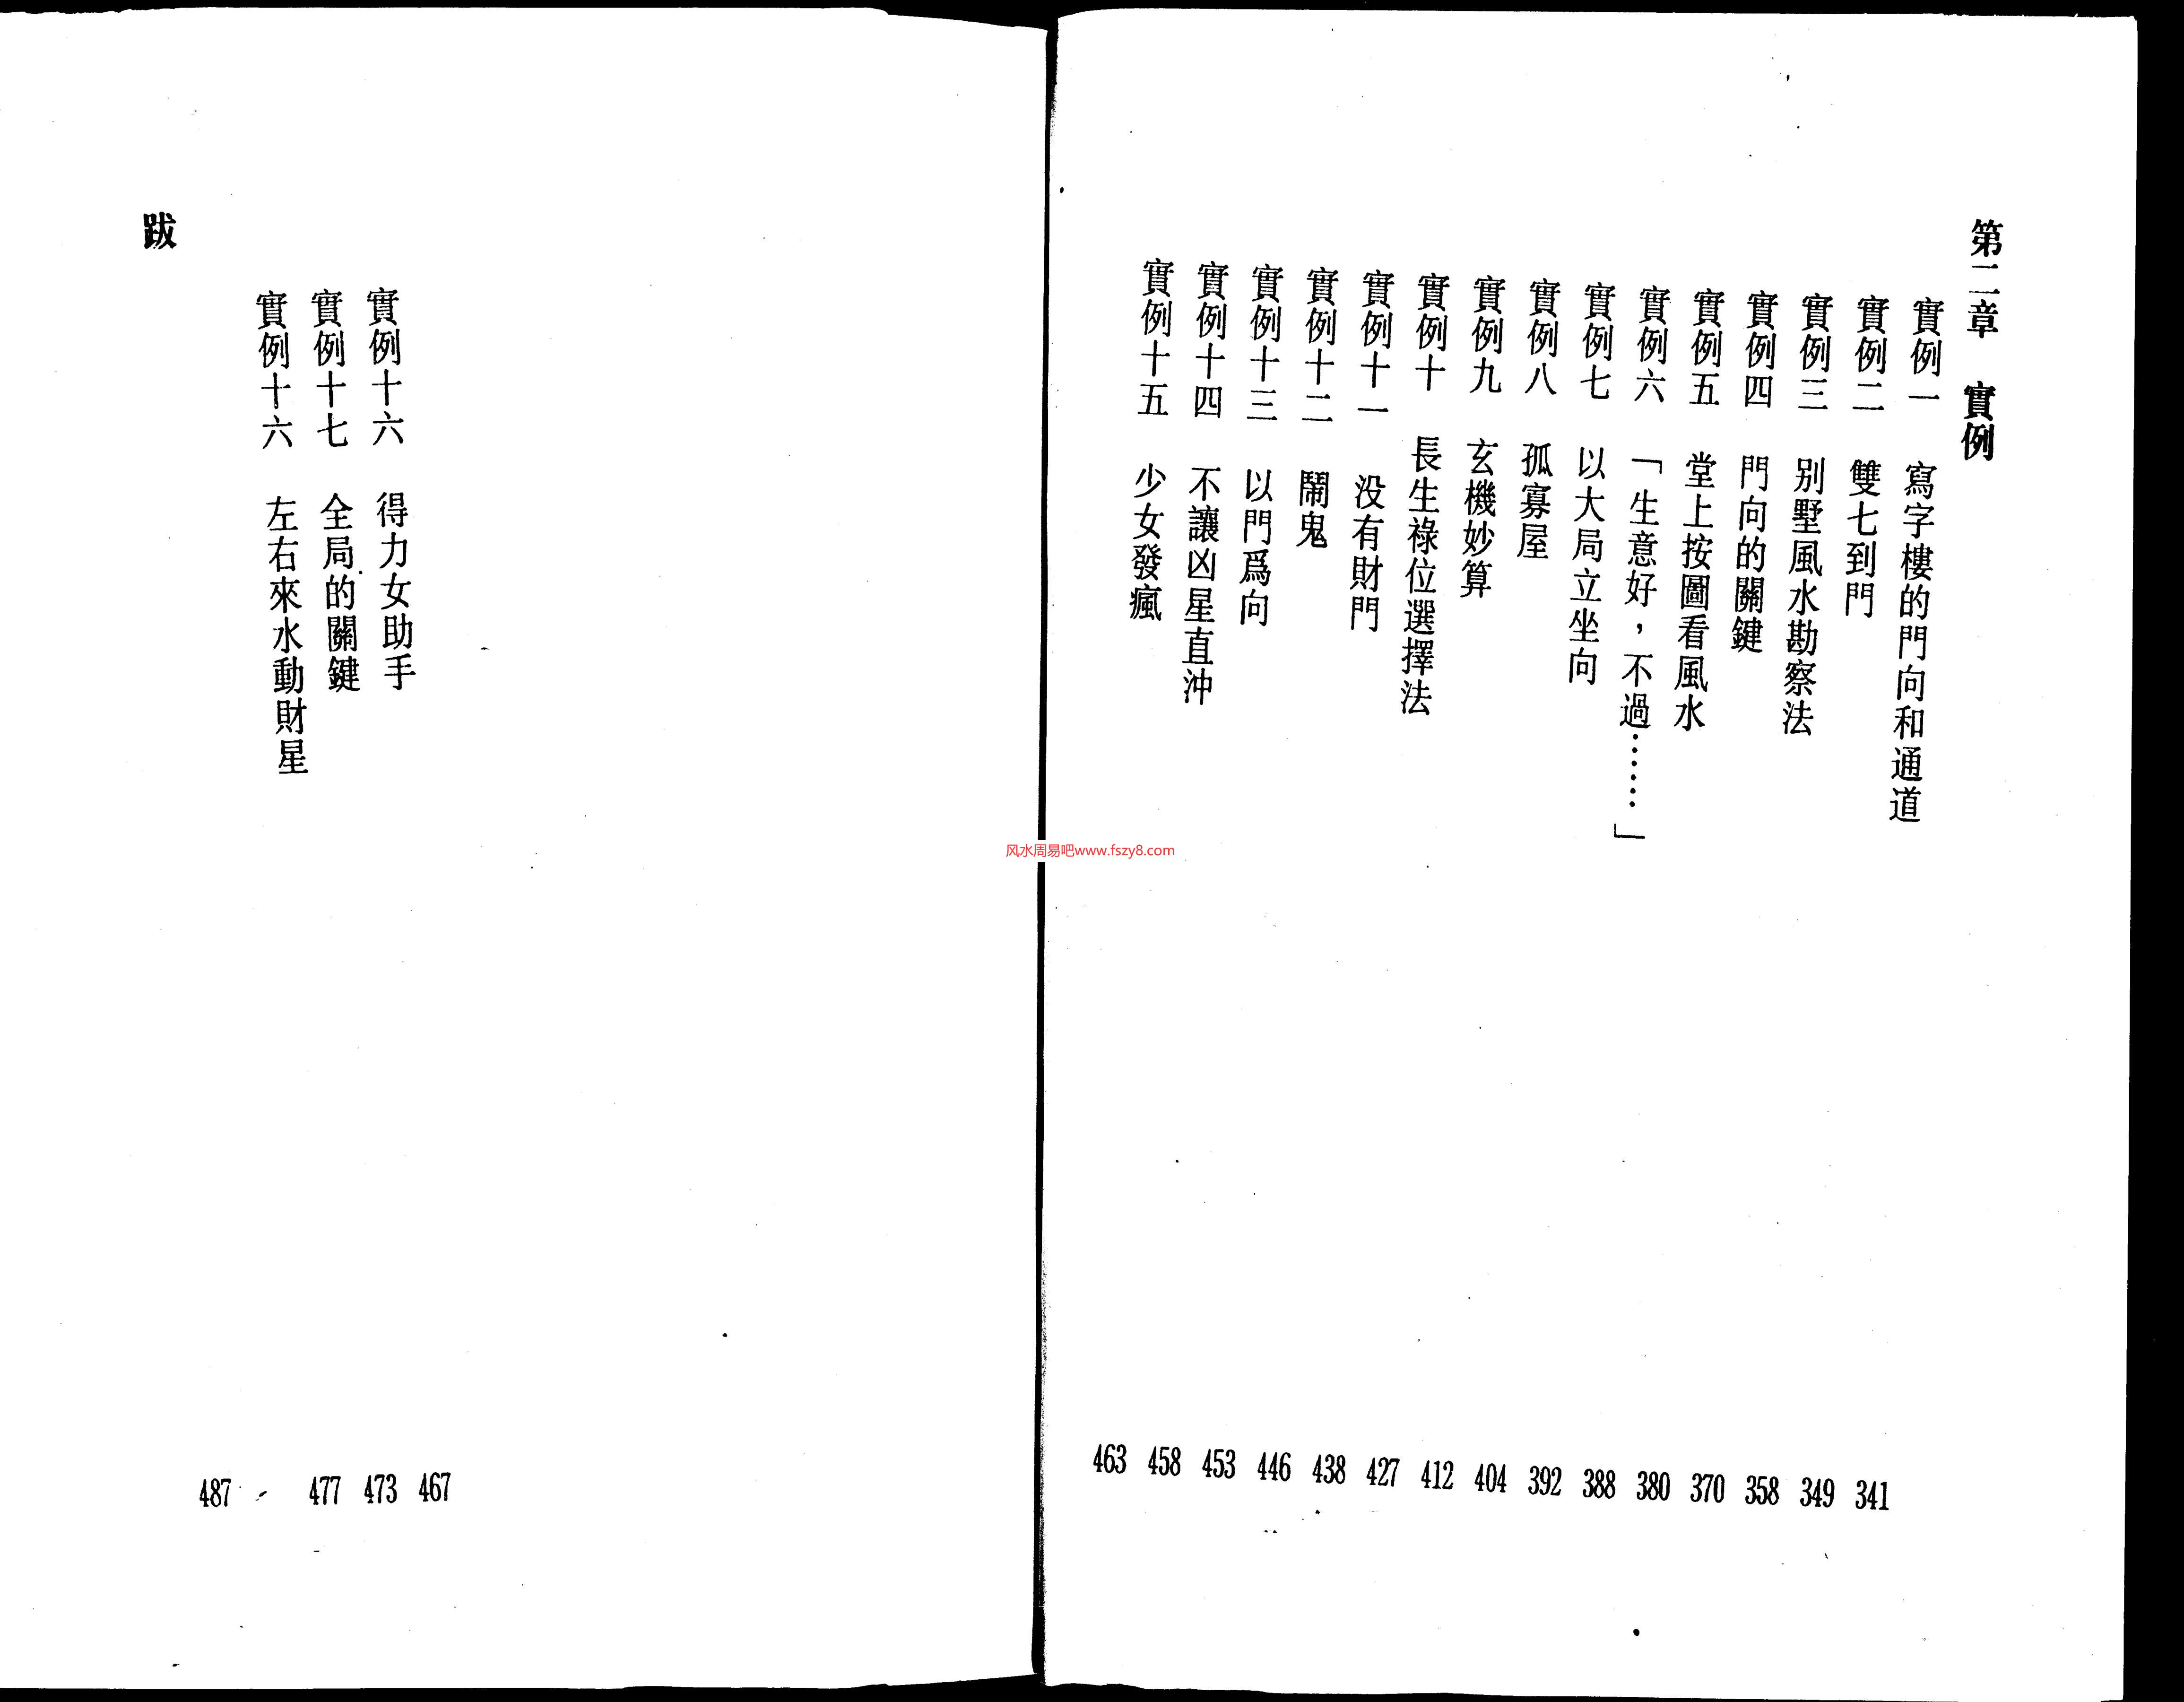 林国雄-玄空飞星风水繁体竖版PDF电子书240页 林国雄玄空飞星风水繁体竖版书(图3)